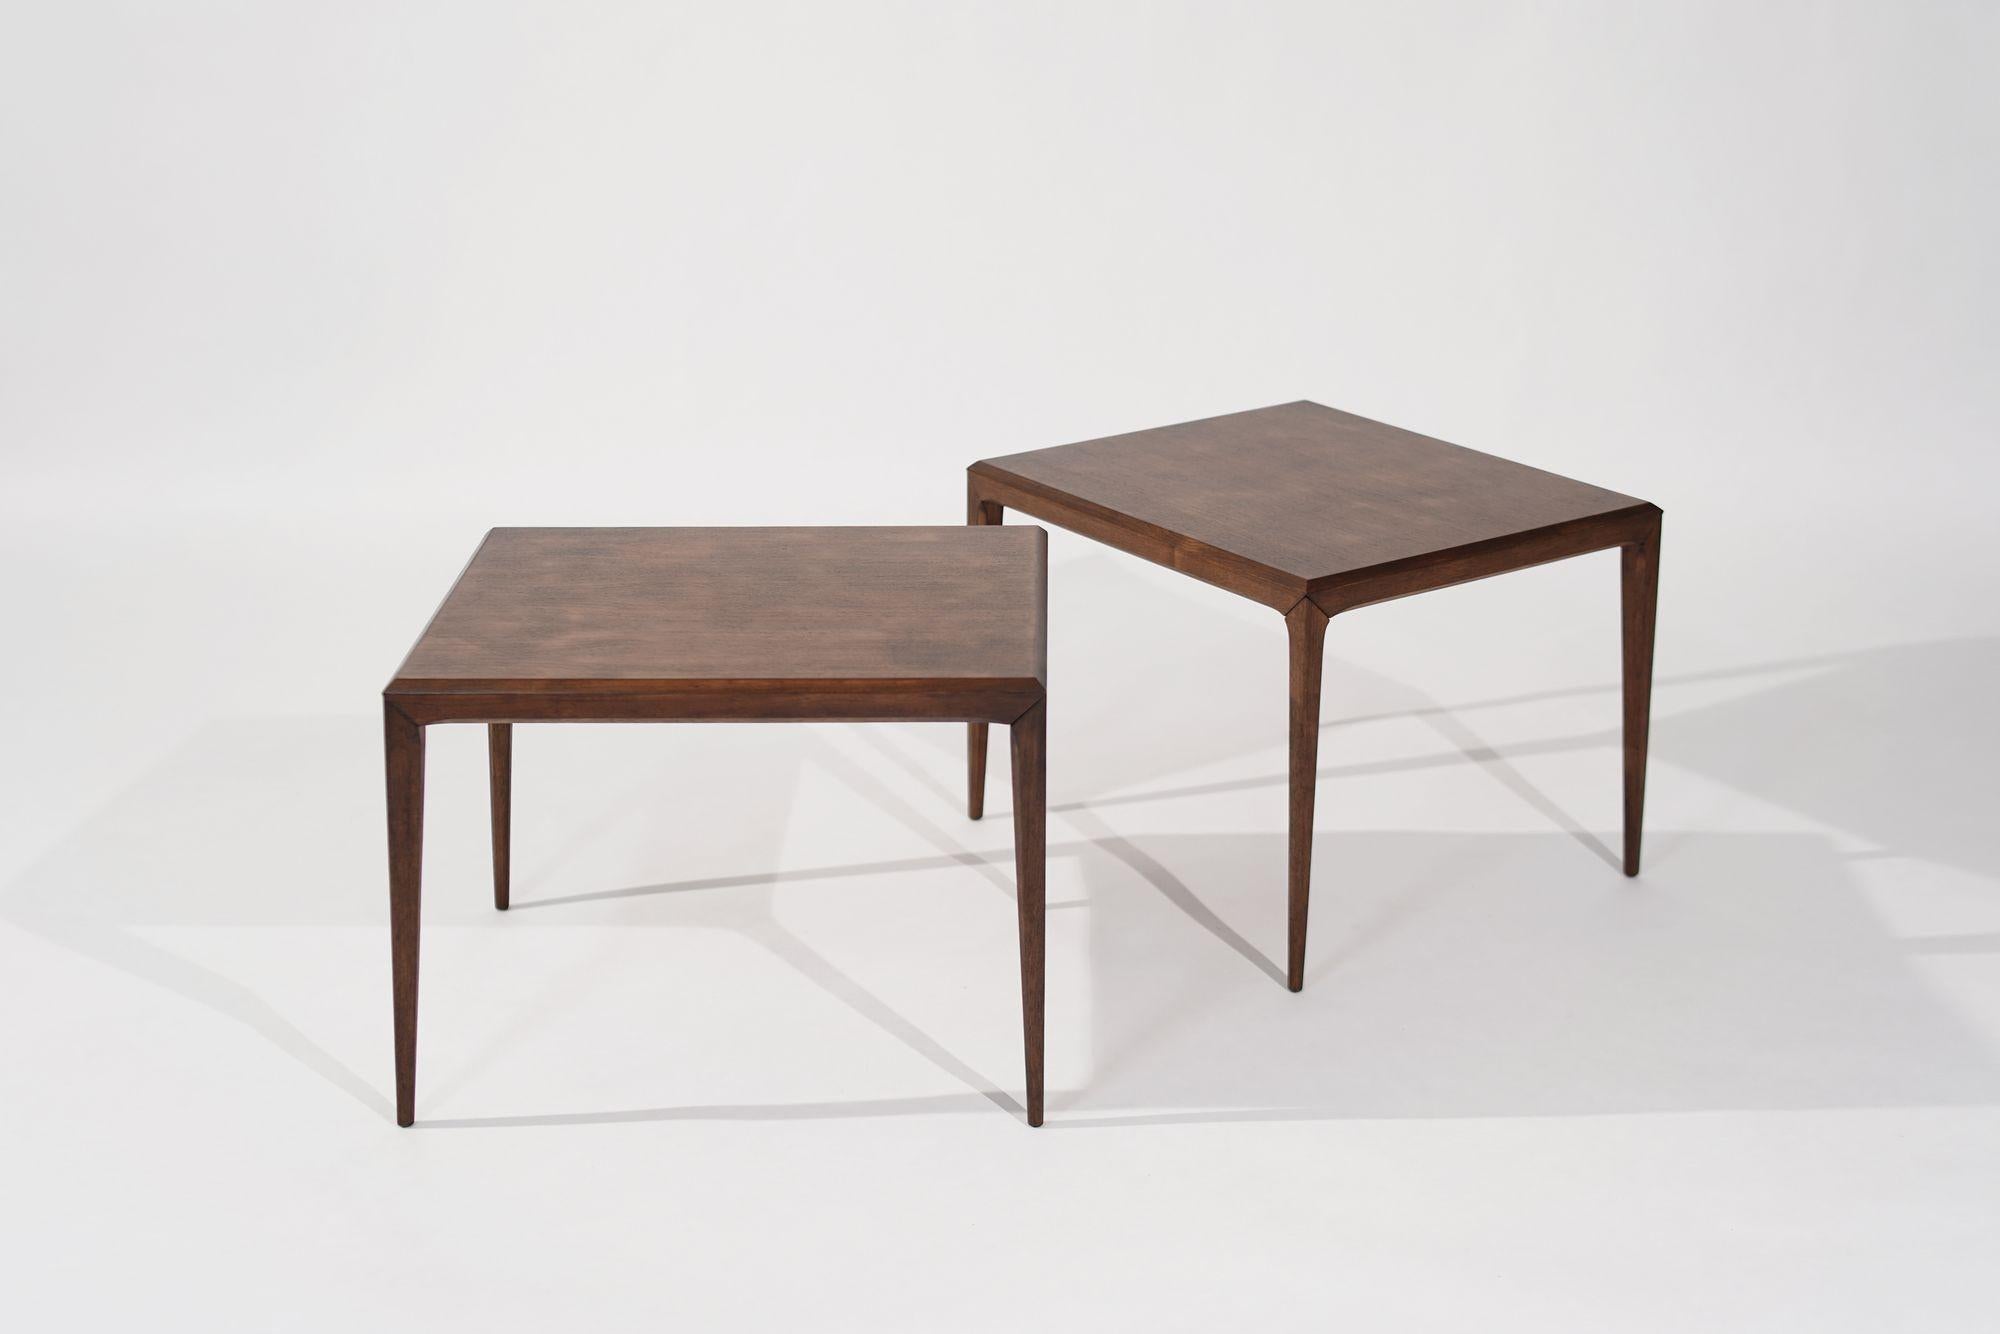 Scandinavian Modern Large-Scale Teak End Tables by Johannes Andersen, Denmark, C. 1950s For Sale